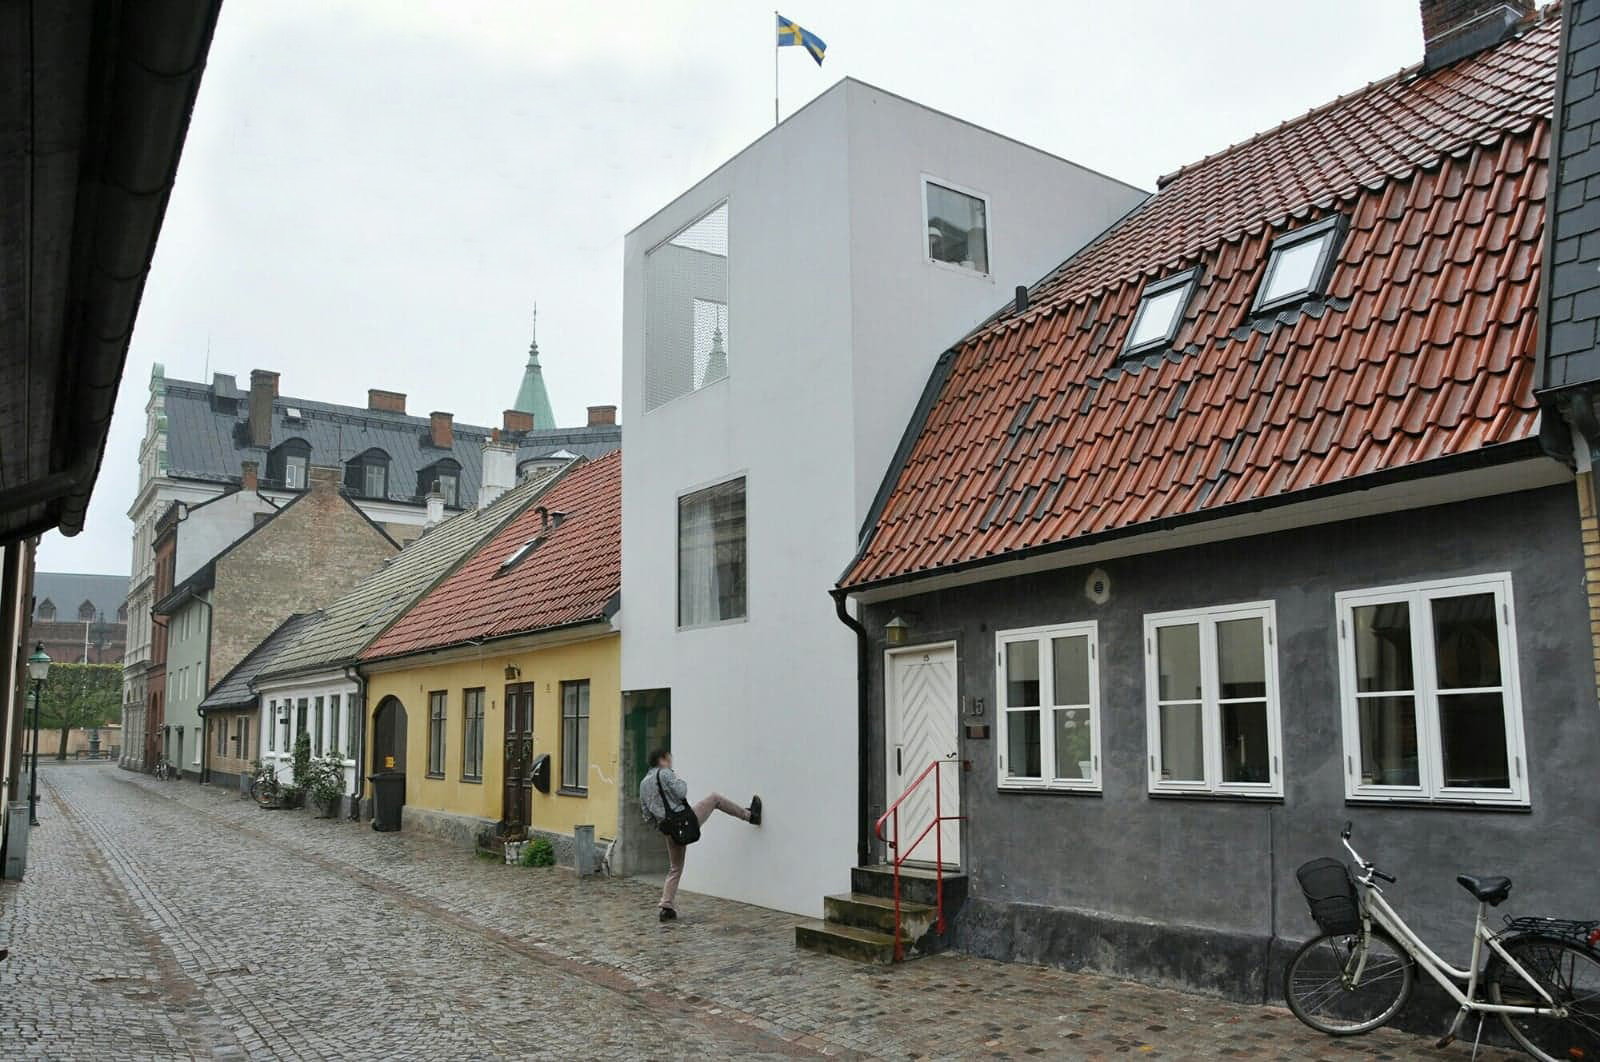 Är Townhouse Japan i Landskrona Sveriges fulaste byggnad genom tiderna?